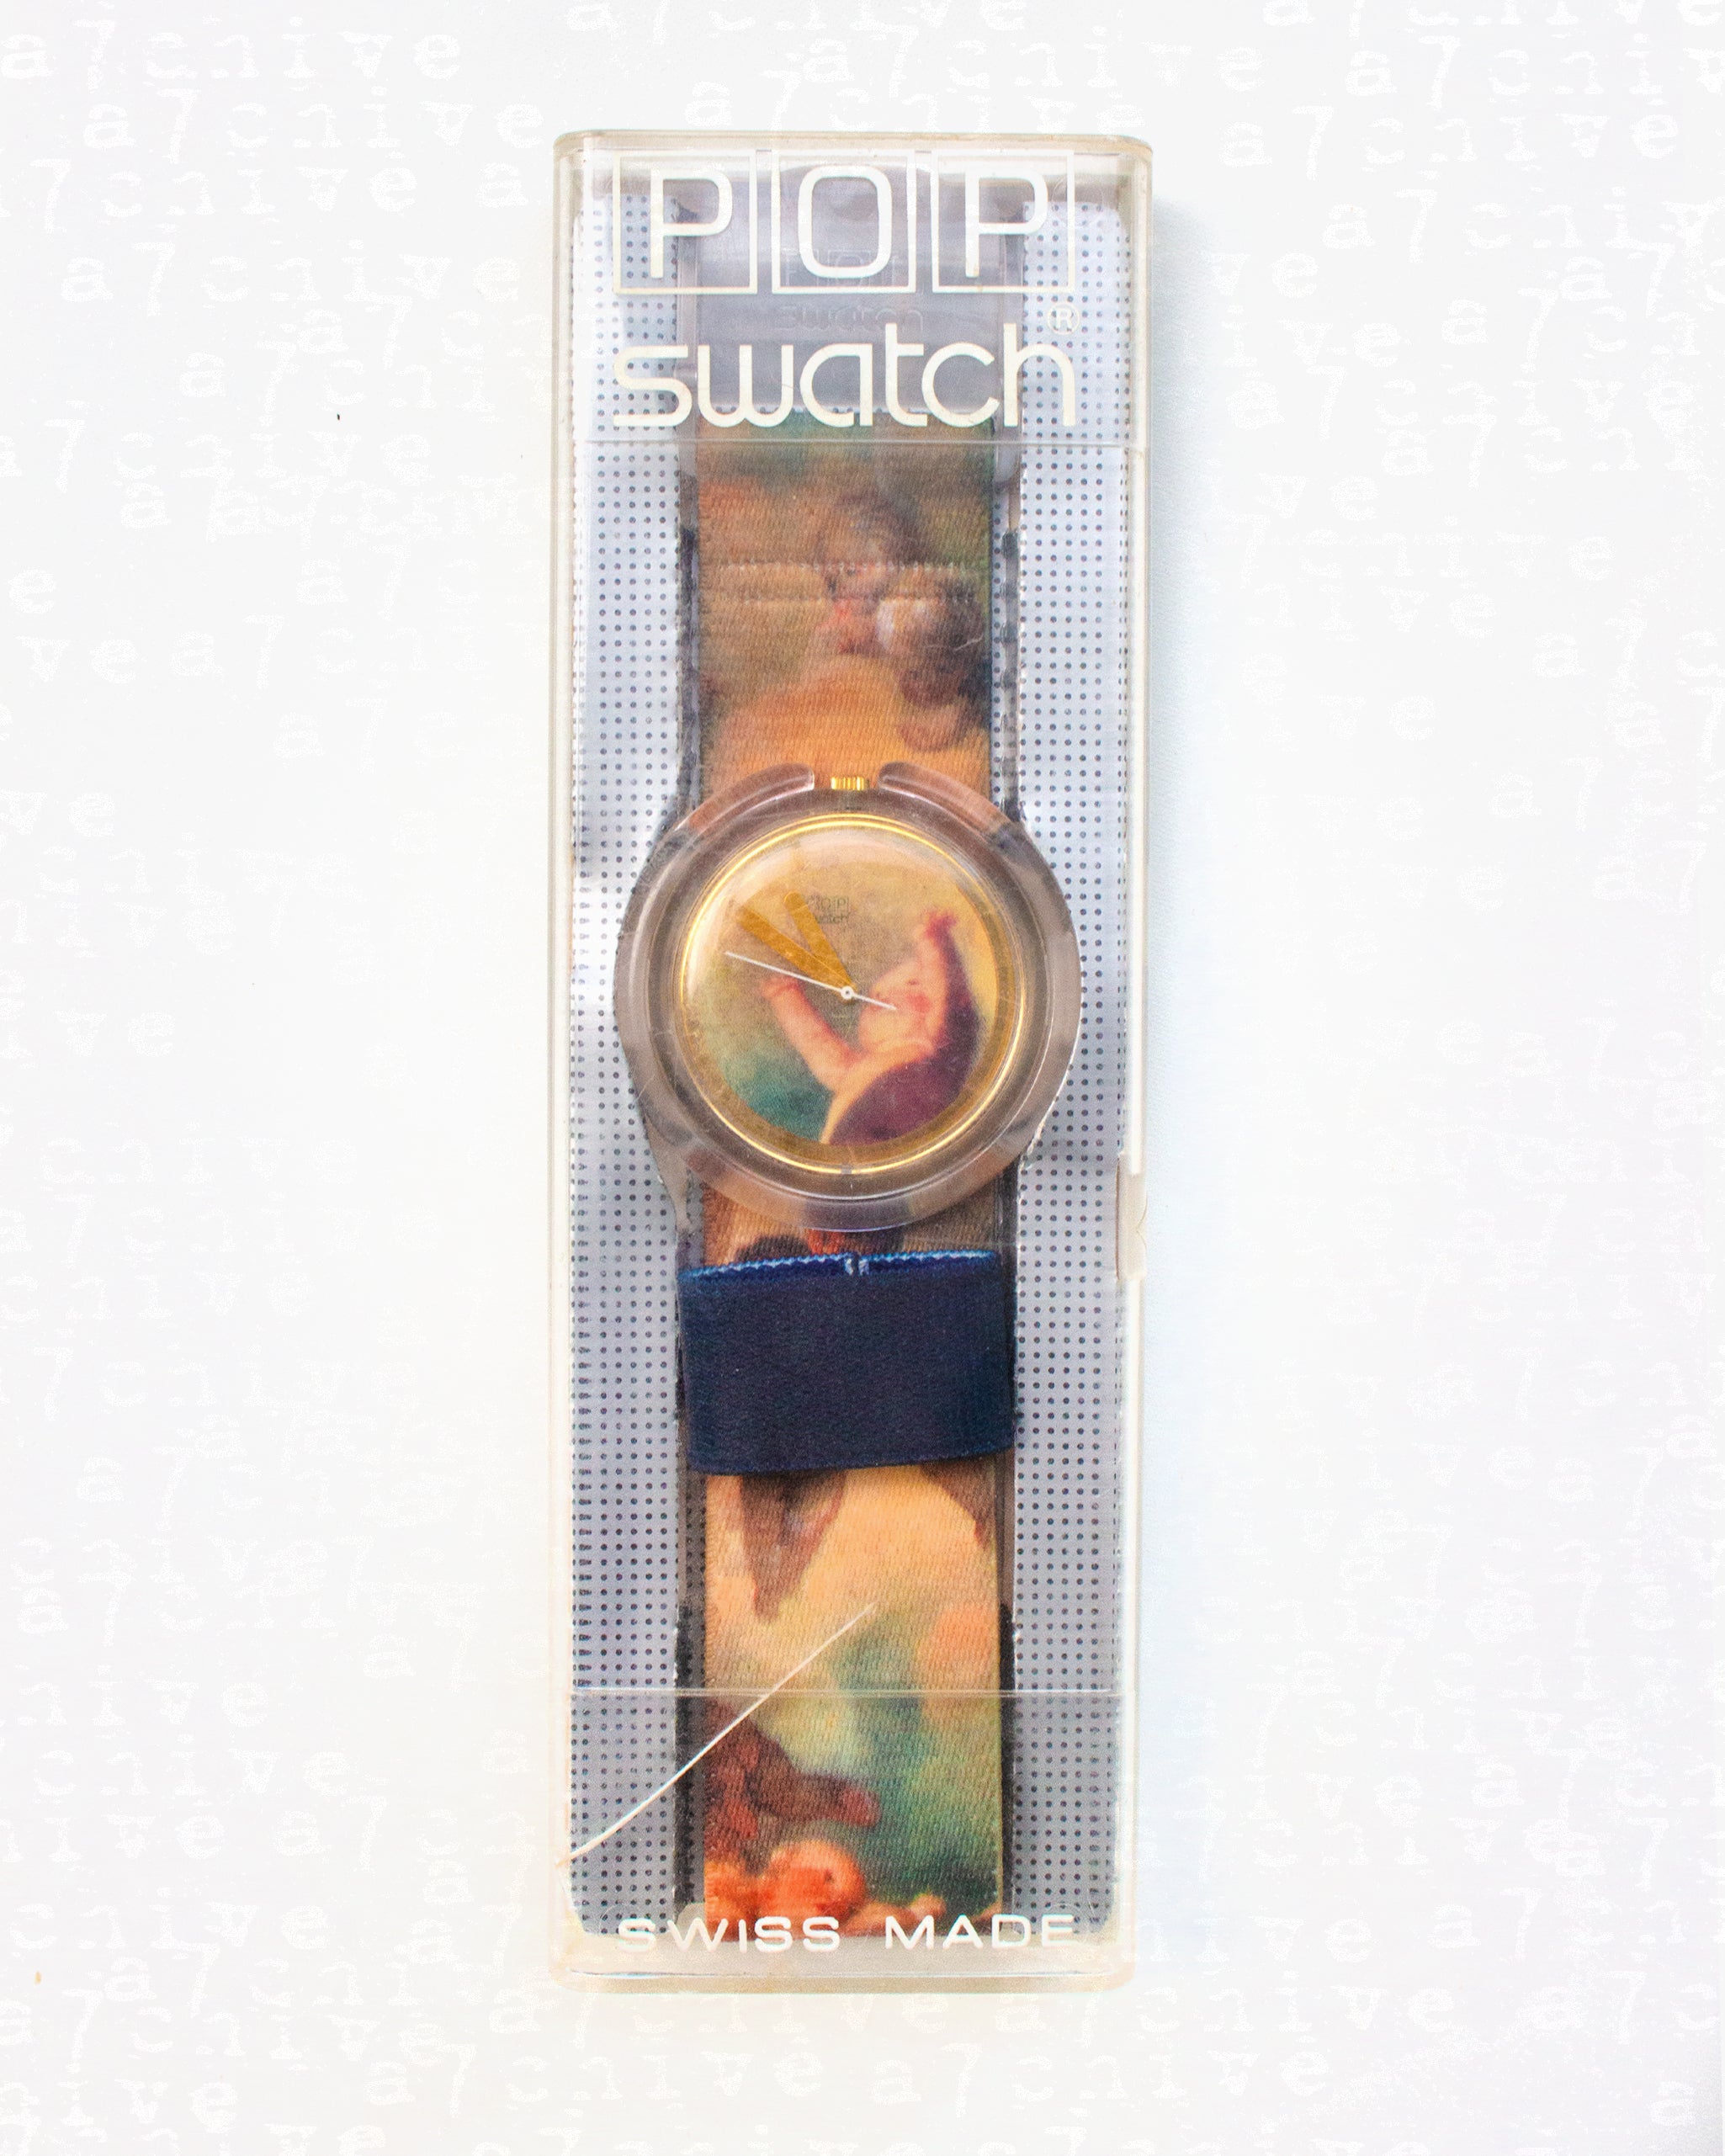 Vivienne Westwood ‘Putti’ Pop Swatch - S/S 1992